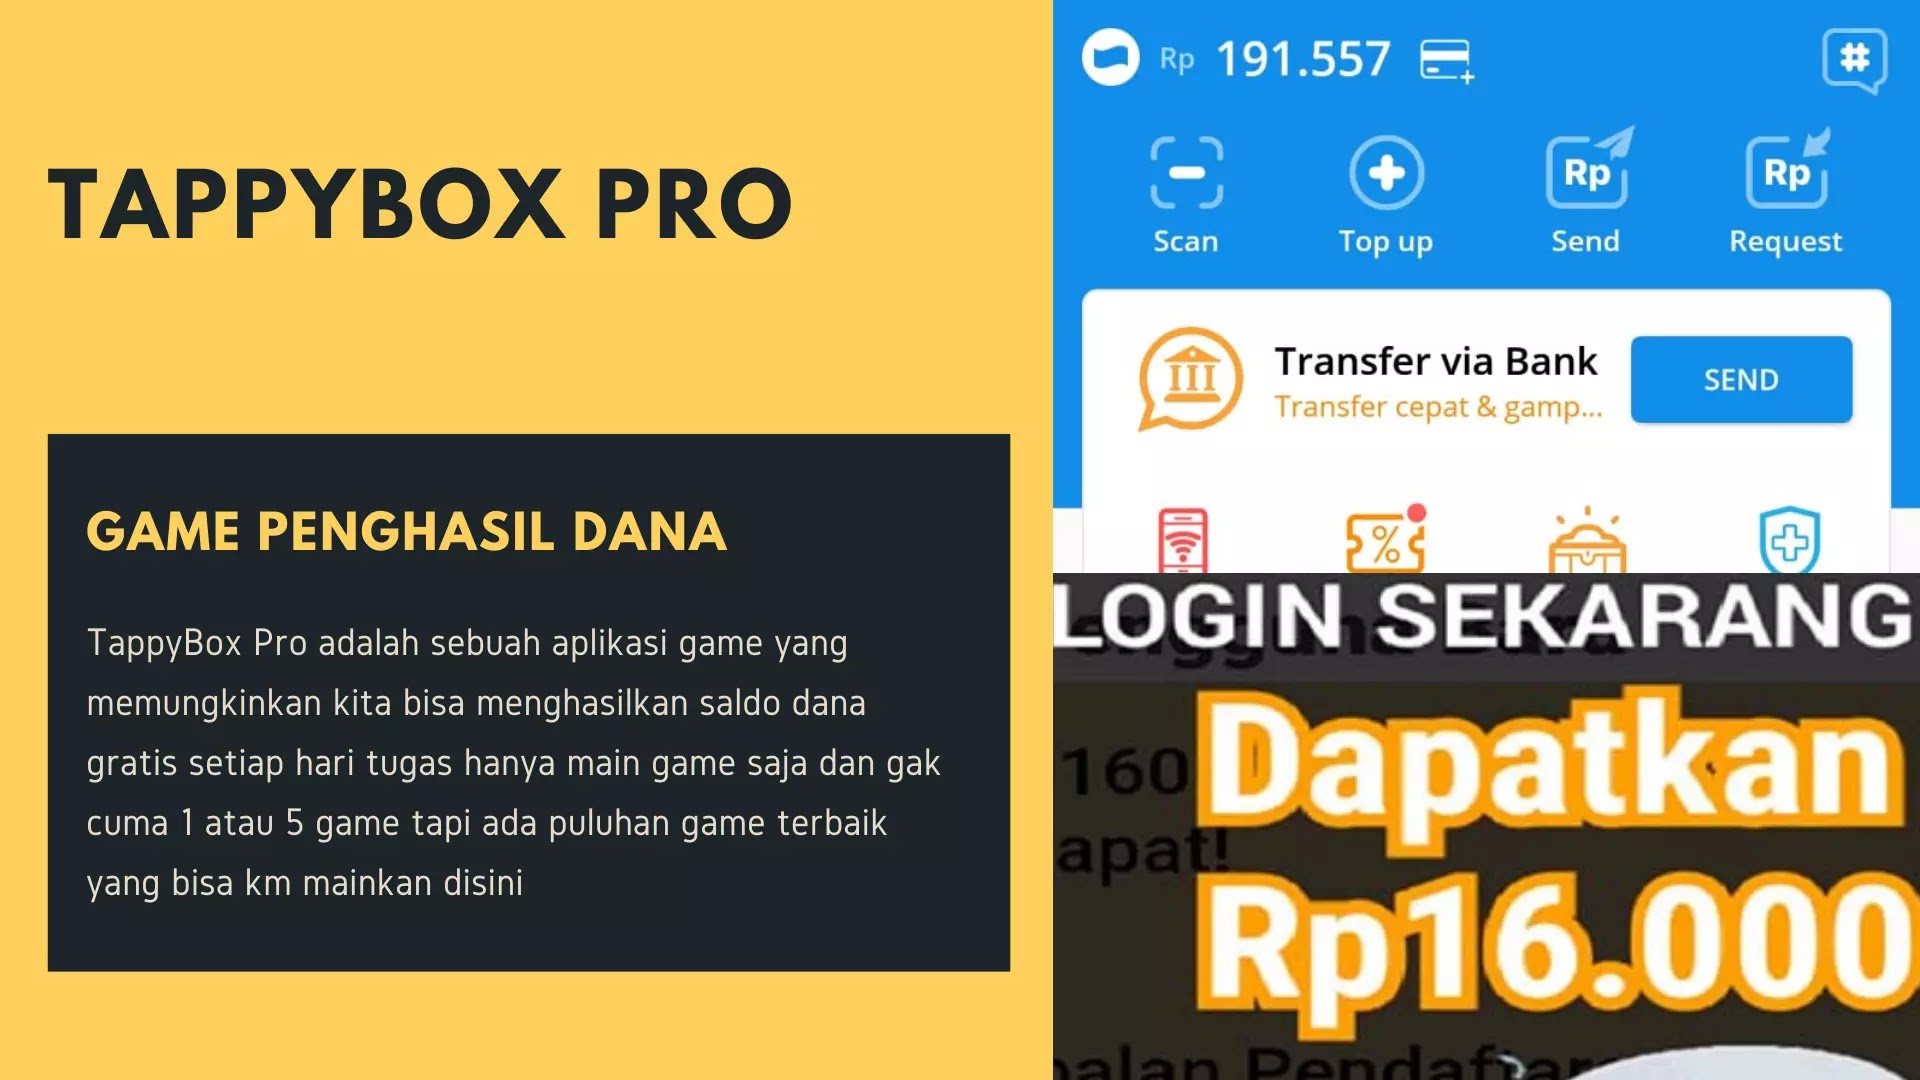 TappyBox Pro Game Penghasil Uang Langsung Ke Dana 2021